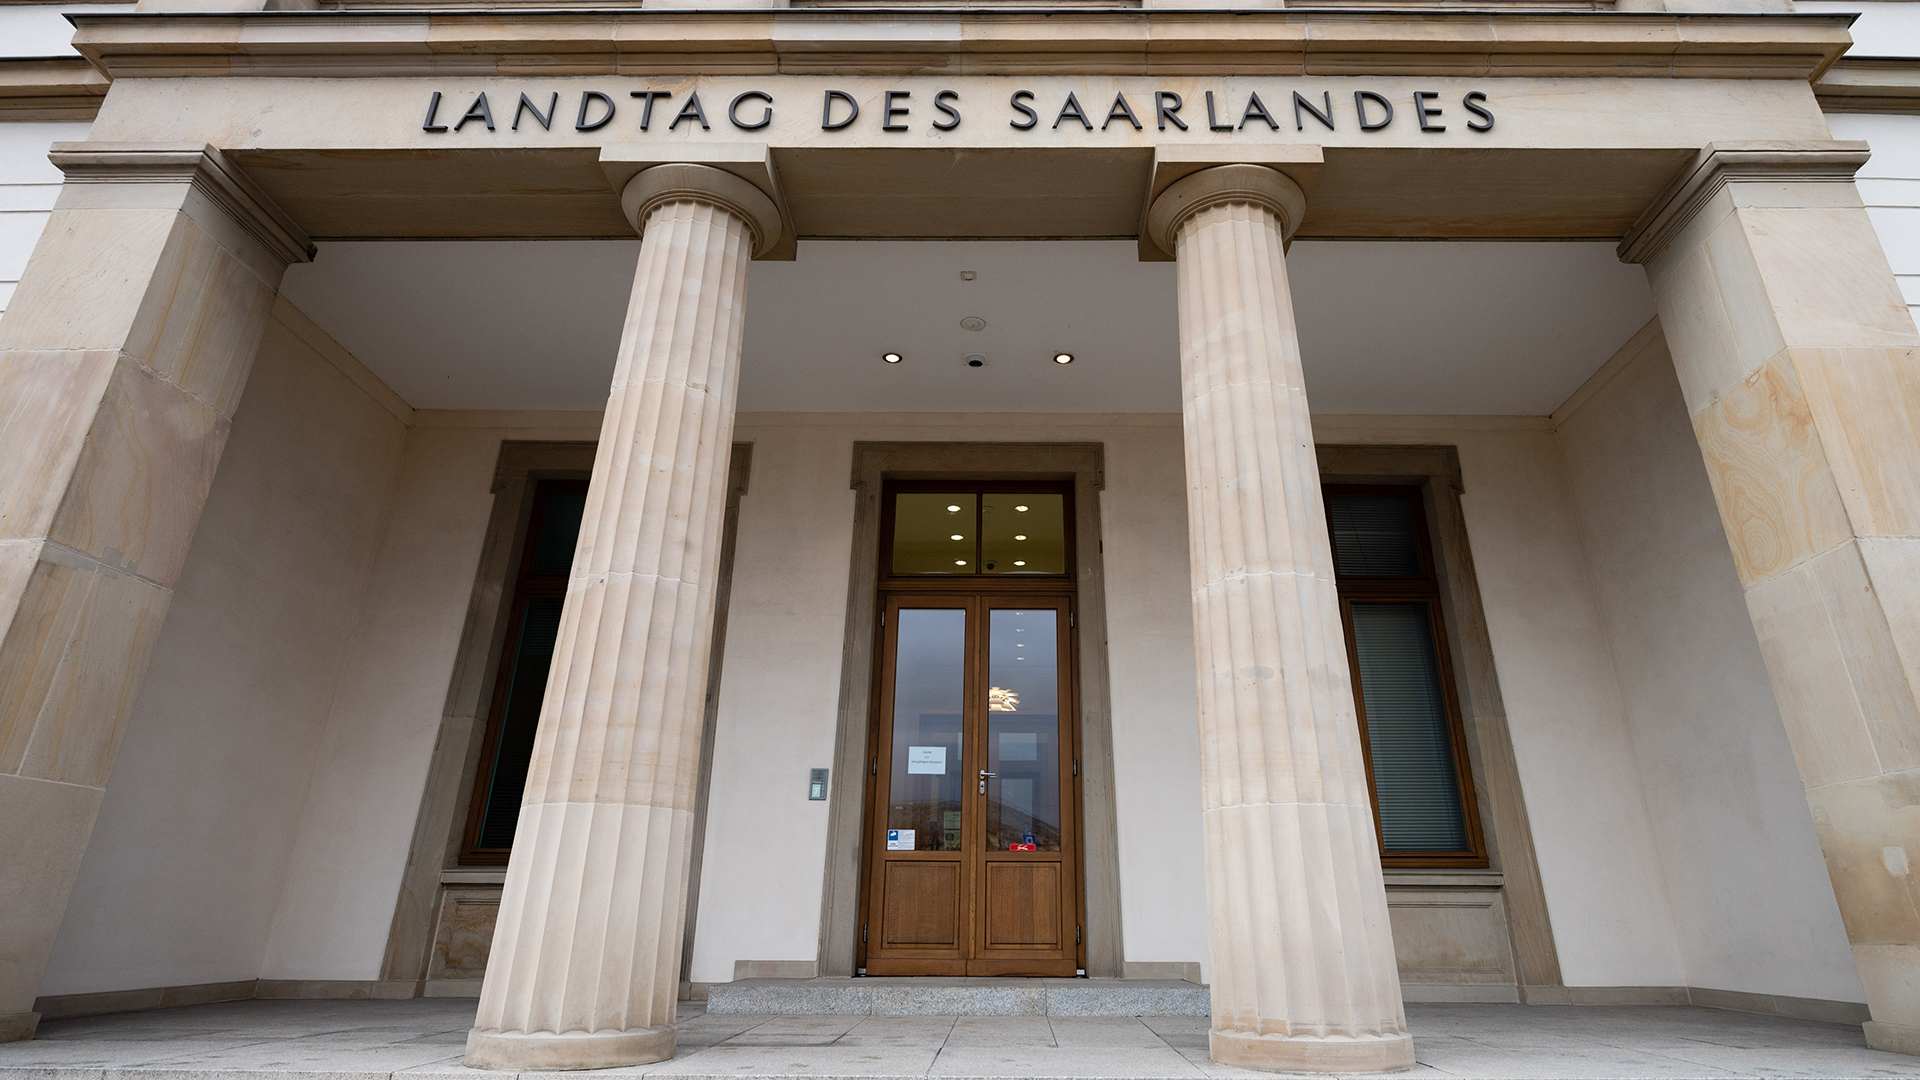 Der Eingang zum Landtags des Saarlandes | picture alliance/dpa